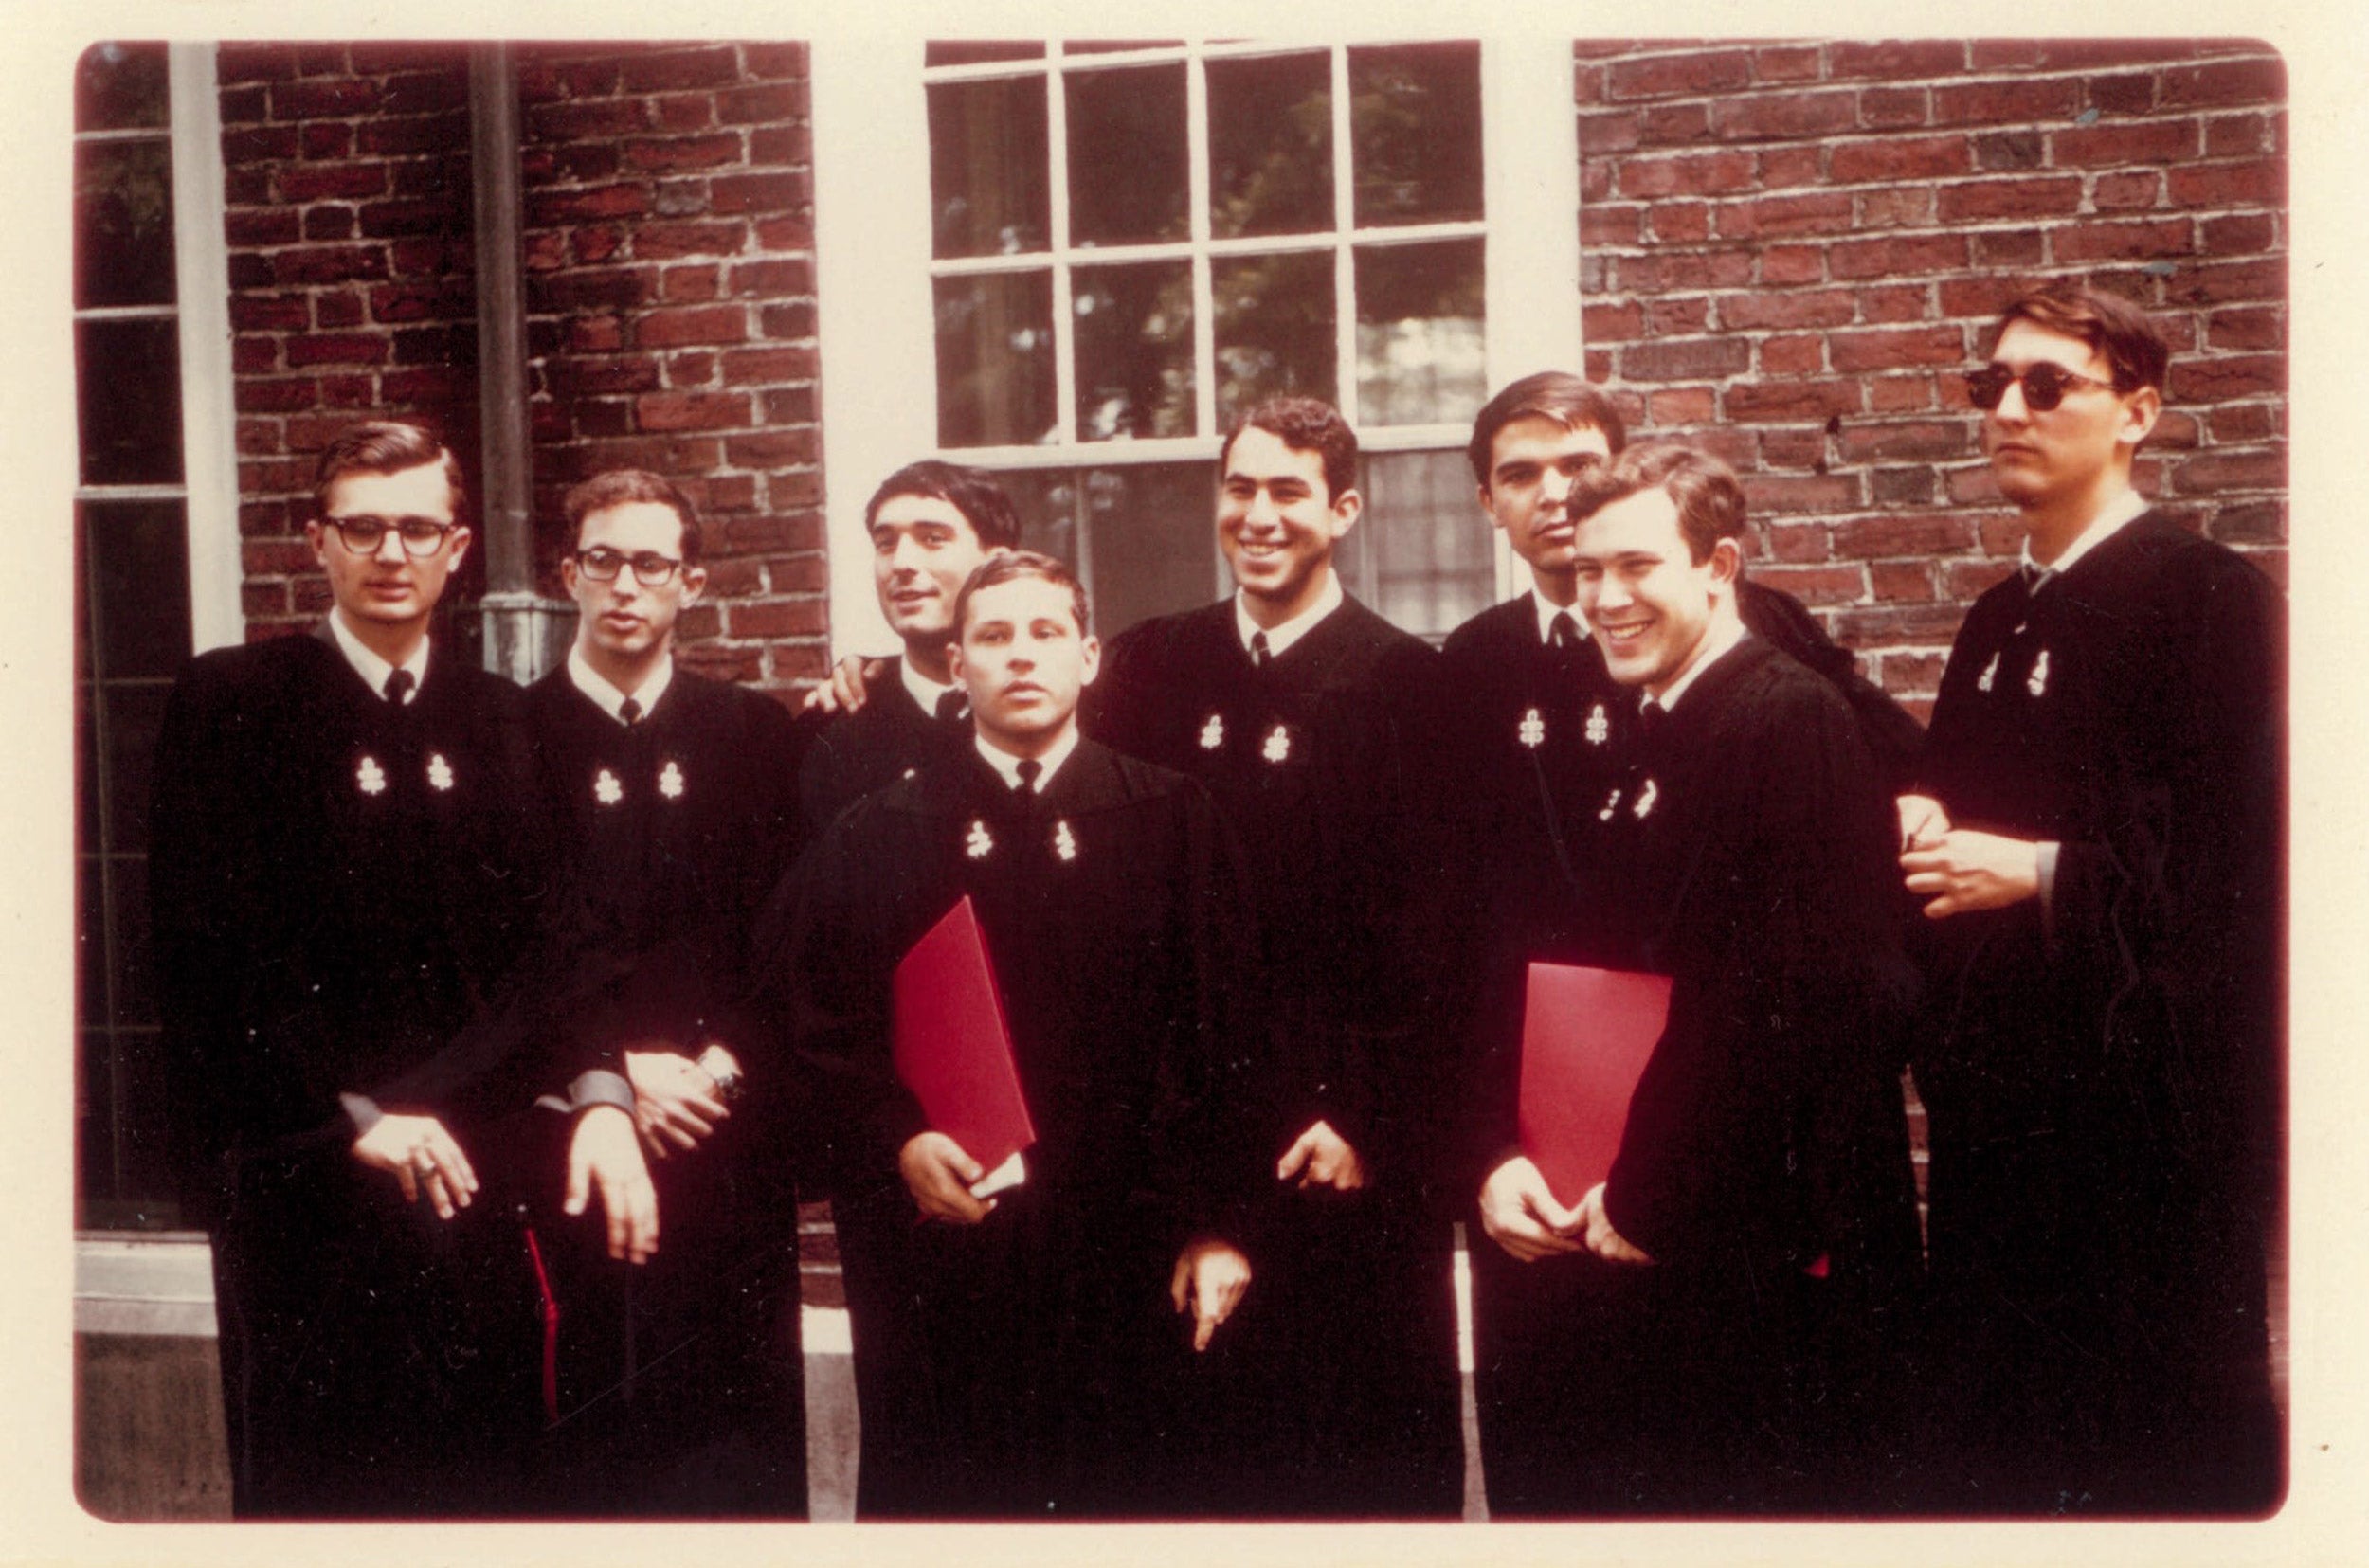 Howard Gardner with fellow Harvard graduates in 1965.